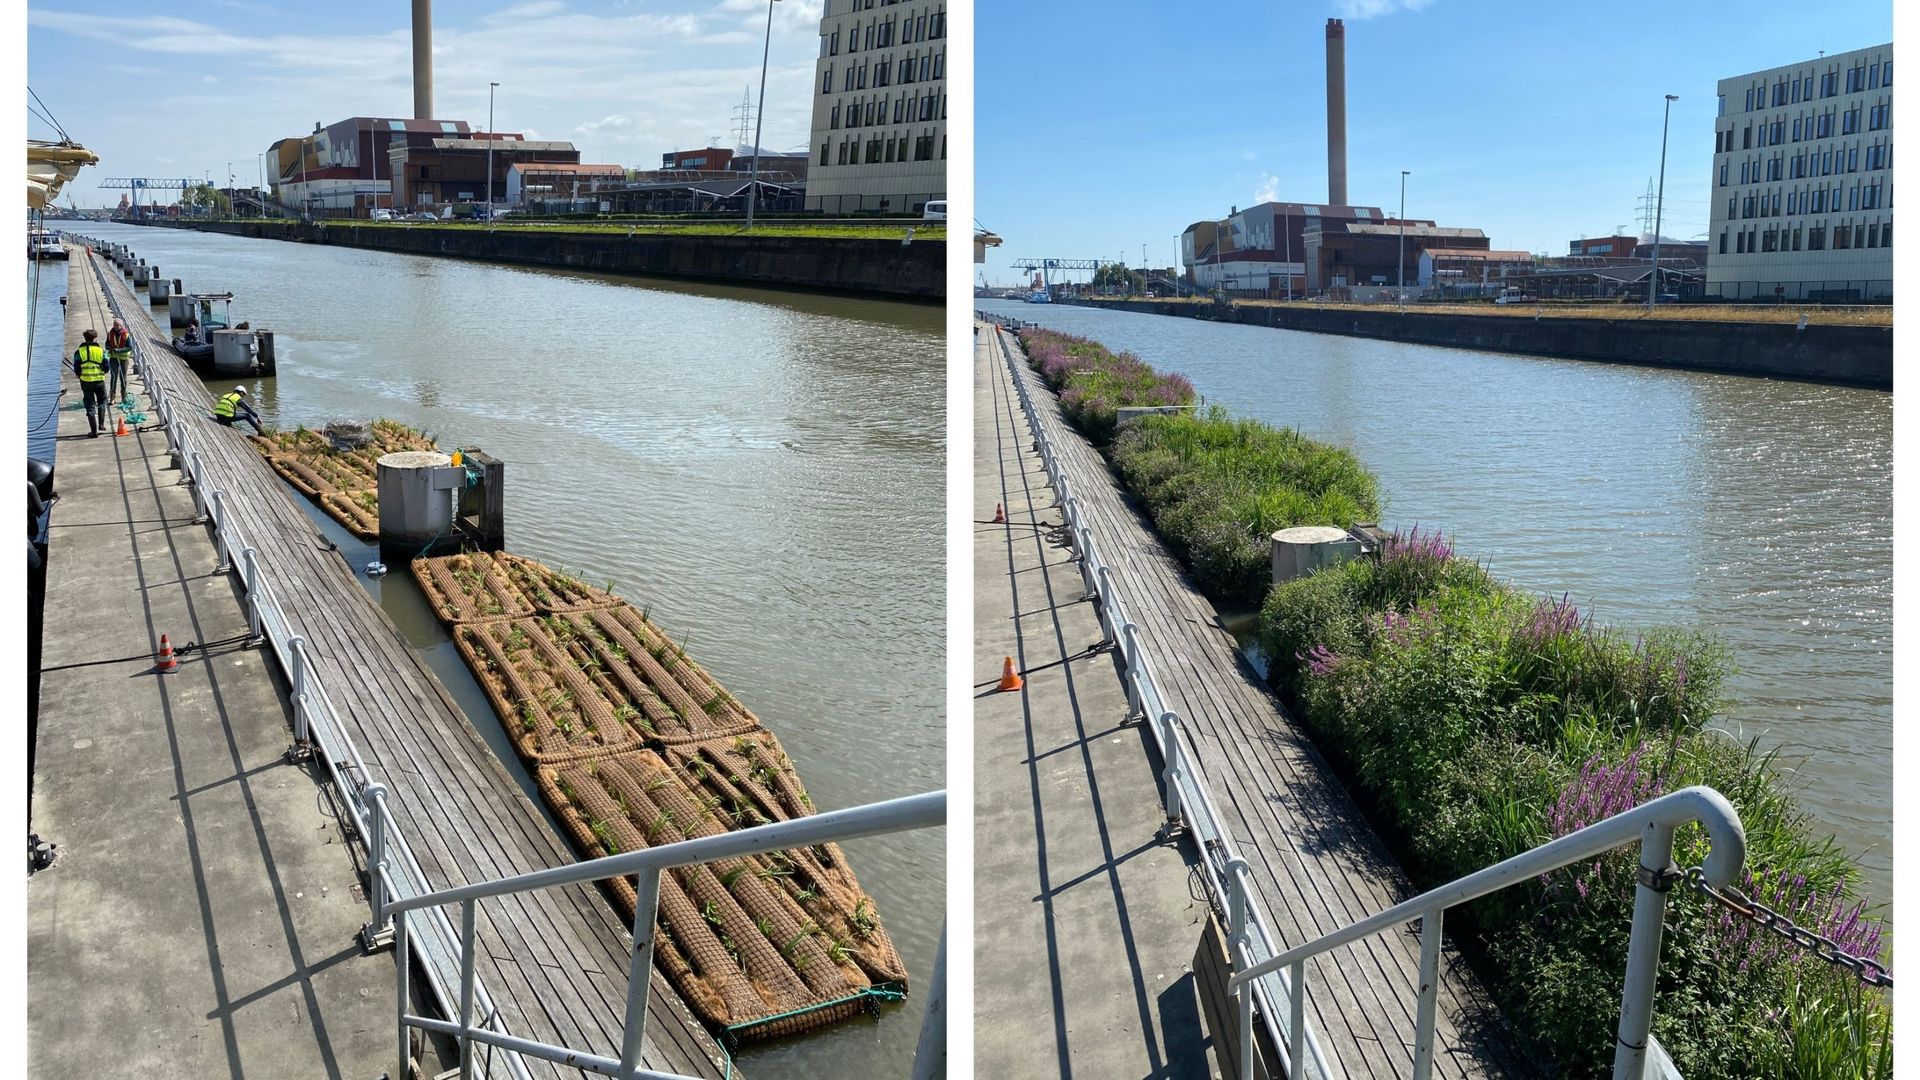 Entre le 26 avril (photo de gauche) et le 9 août (photo de droite), les radeaux végétalisés ont modifié l’aspect du canal à proximité du port de plaisance de Bruxelles.